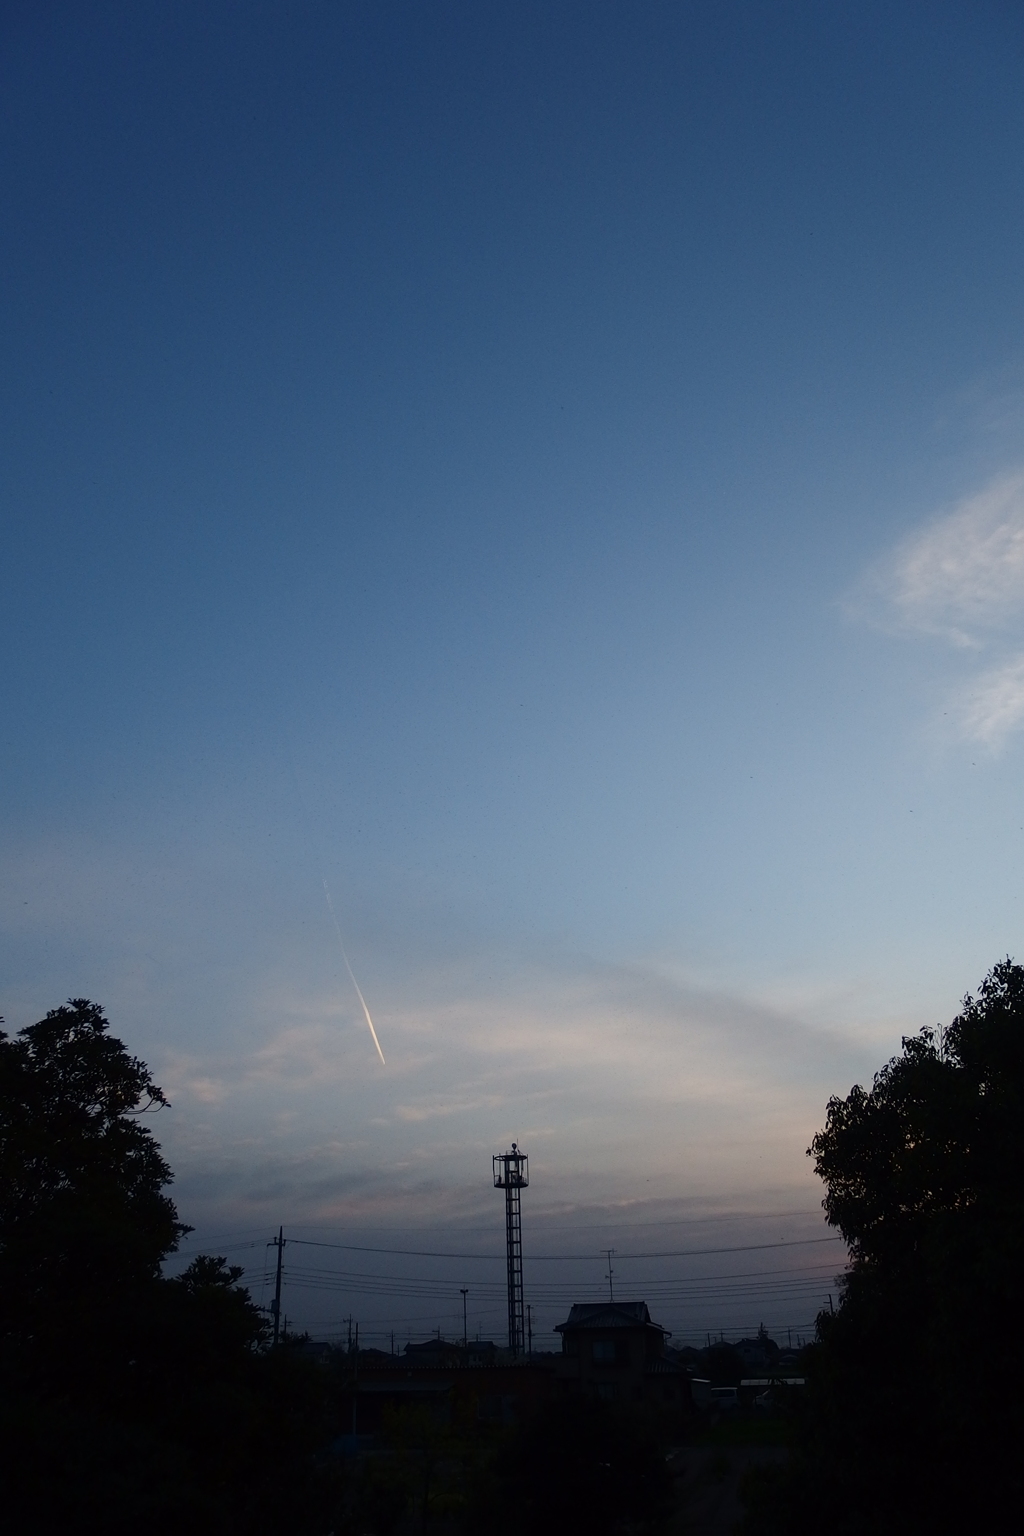 2015/04/18_夕空に飛行機雲